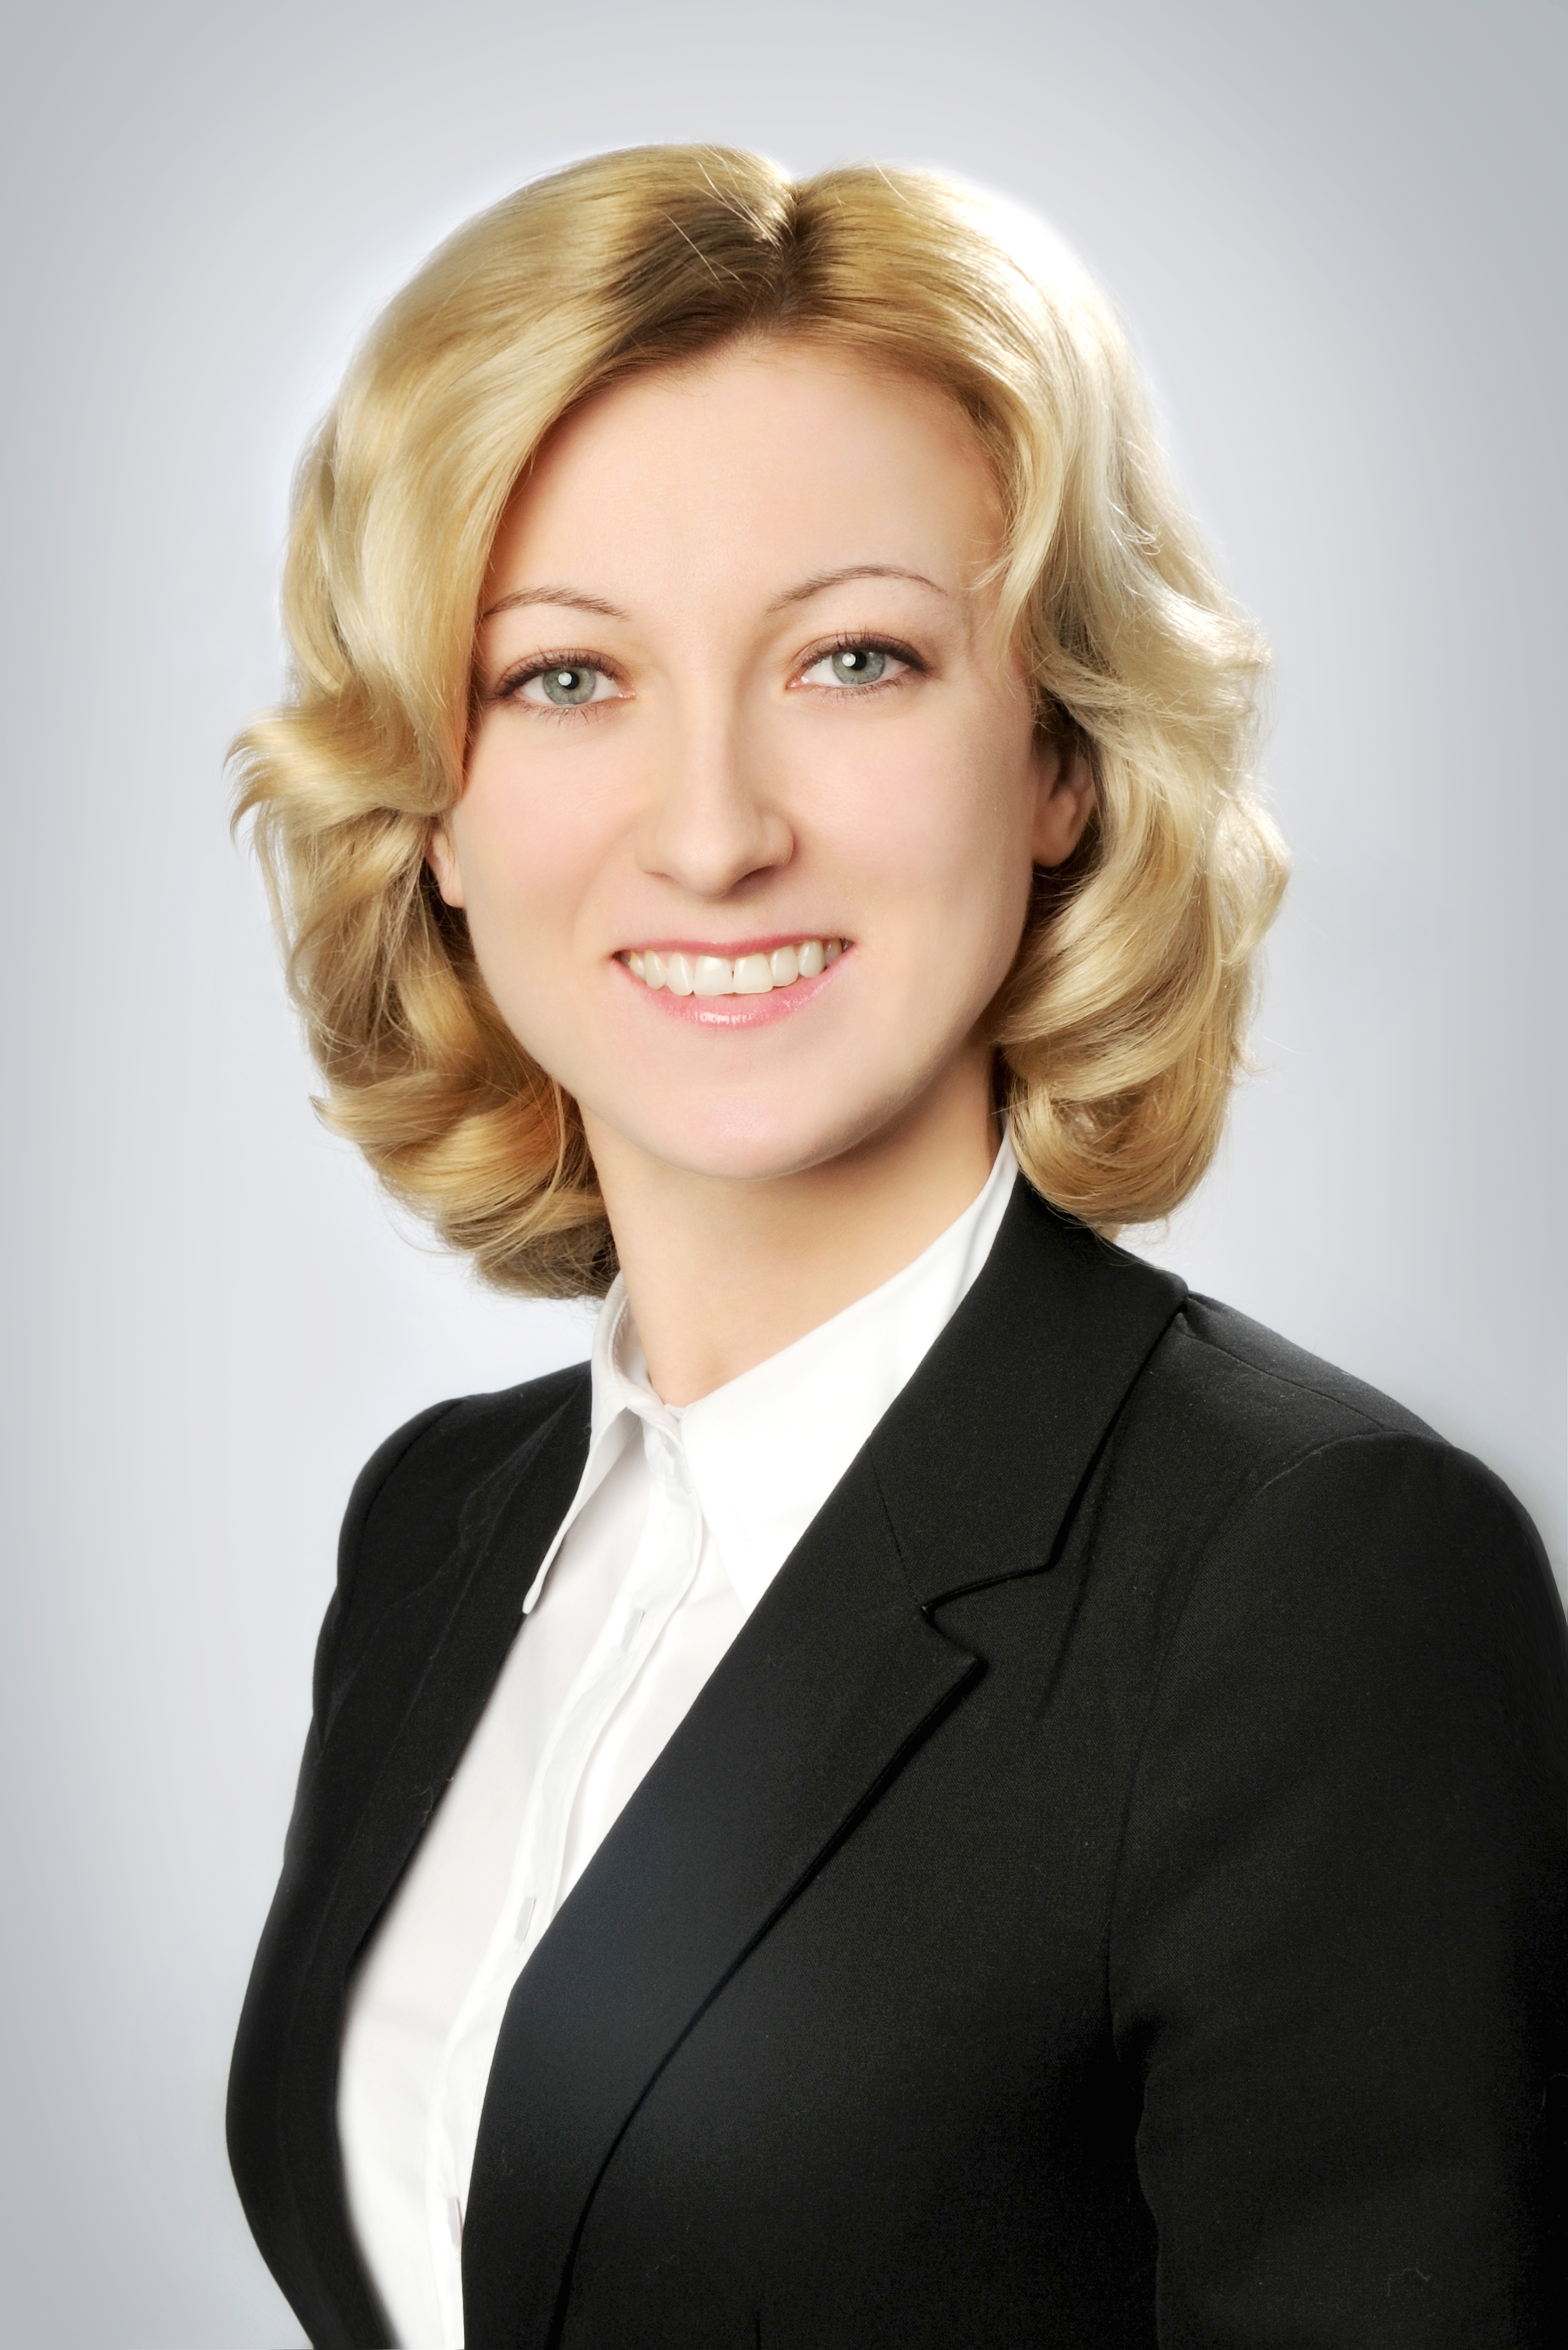 Алена Горлушко, руководитель отдела карточного бизнеса Пиреус Банка в Украине: 